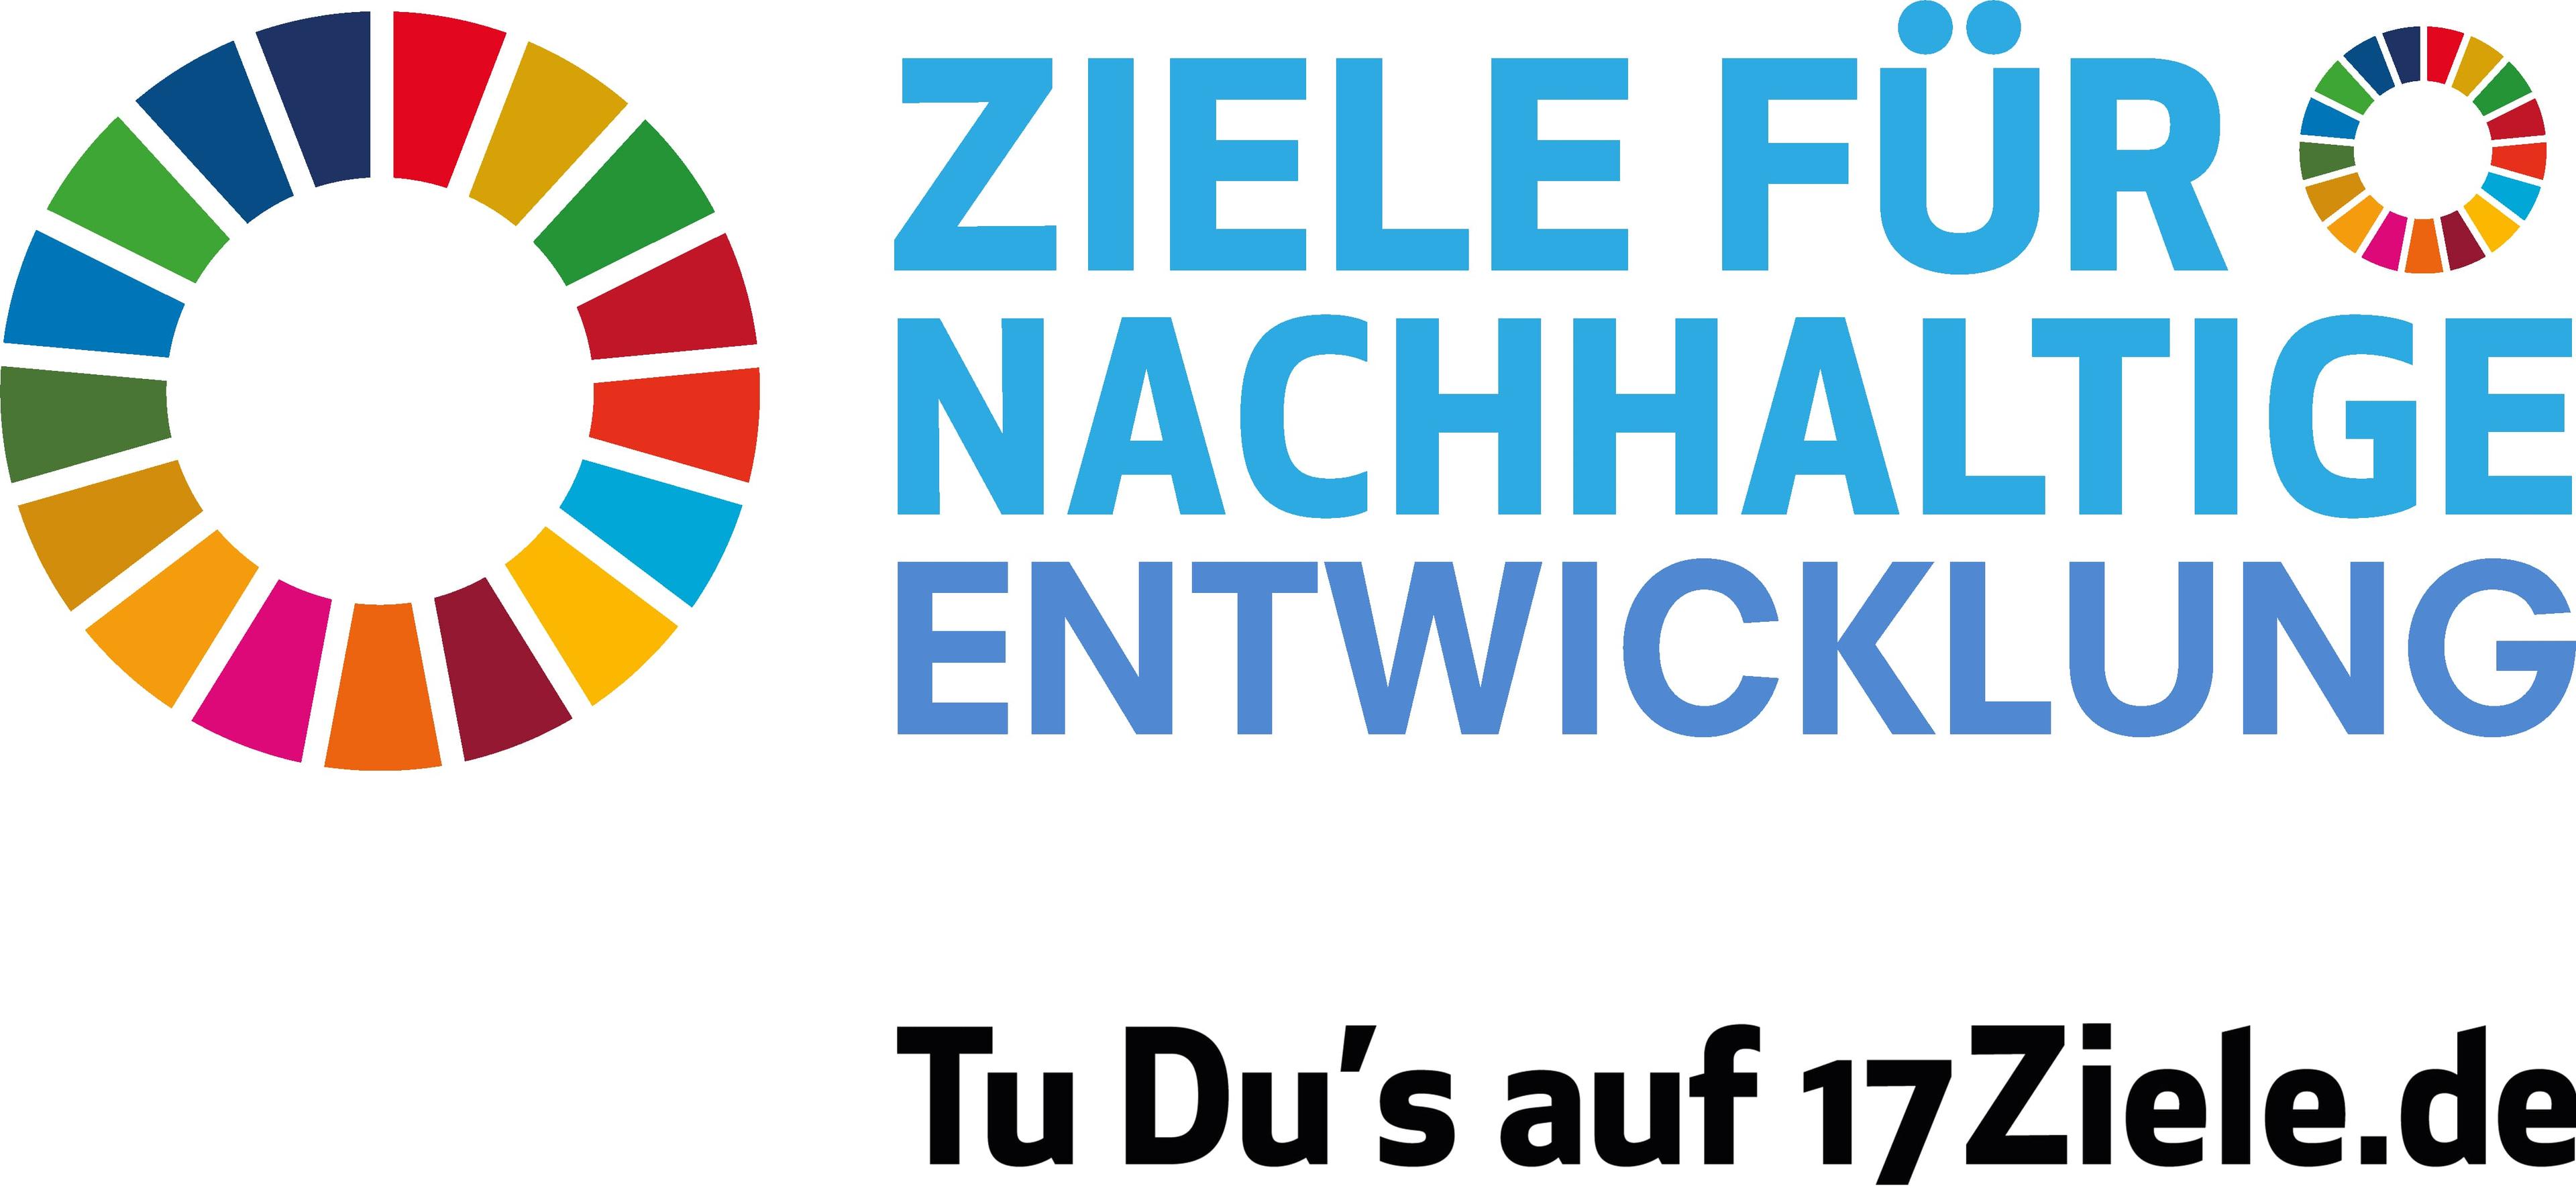 Das Logo von 17ziele.de besitzt einen Kreis auf verschiedenen Farben und rechts neben dem Kreis steht in blau die Schrift: Ziele für nachhaltige Entwicklung, darunter in schwarz: Tu Du's auf 17Ziele.de